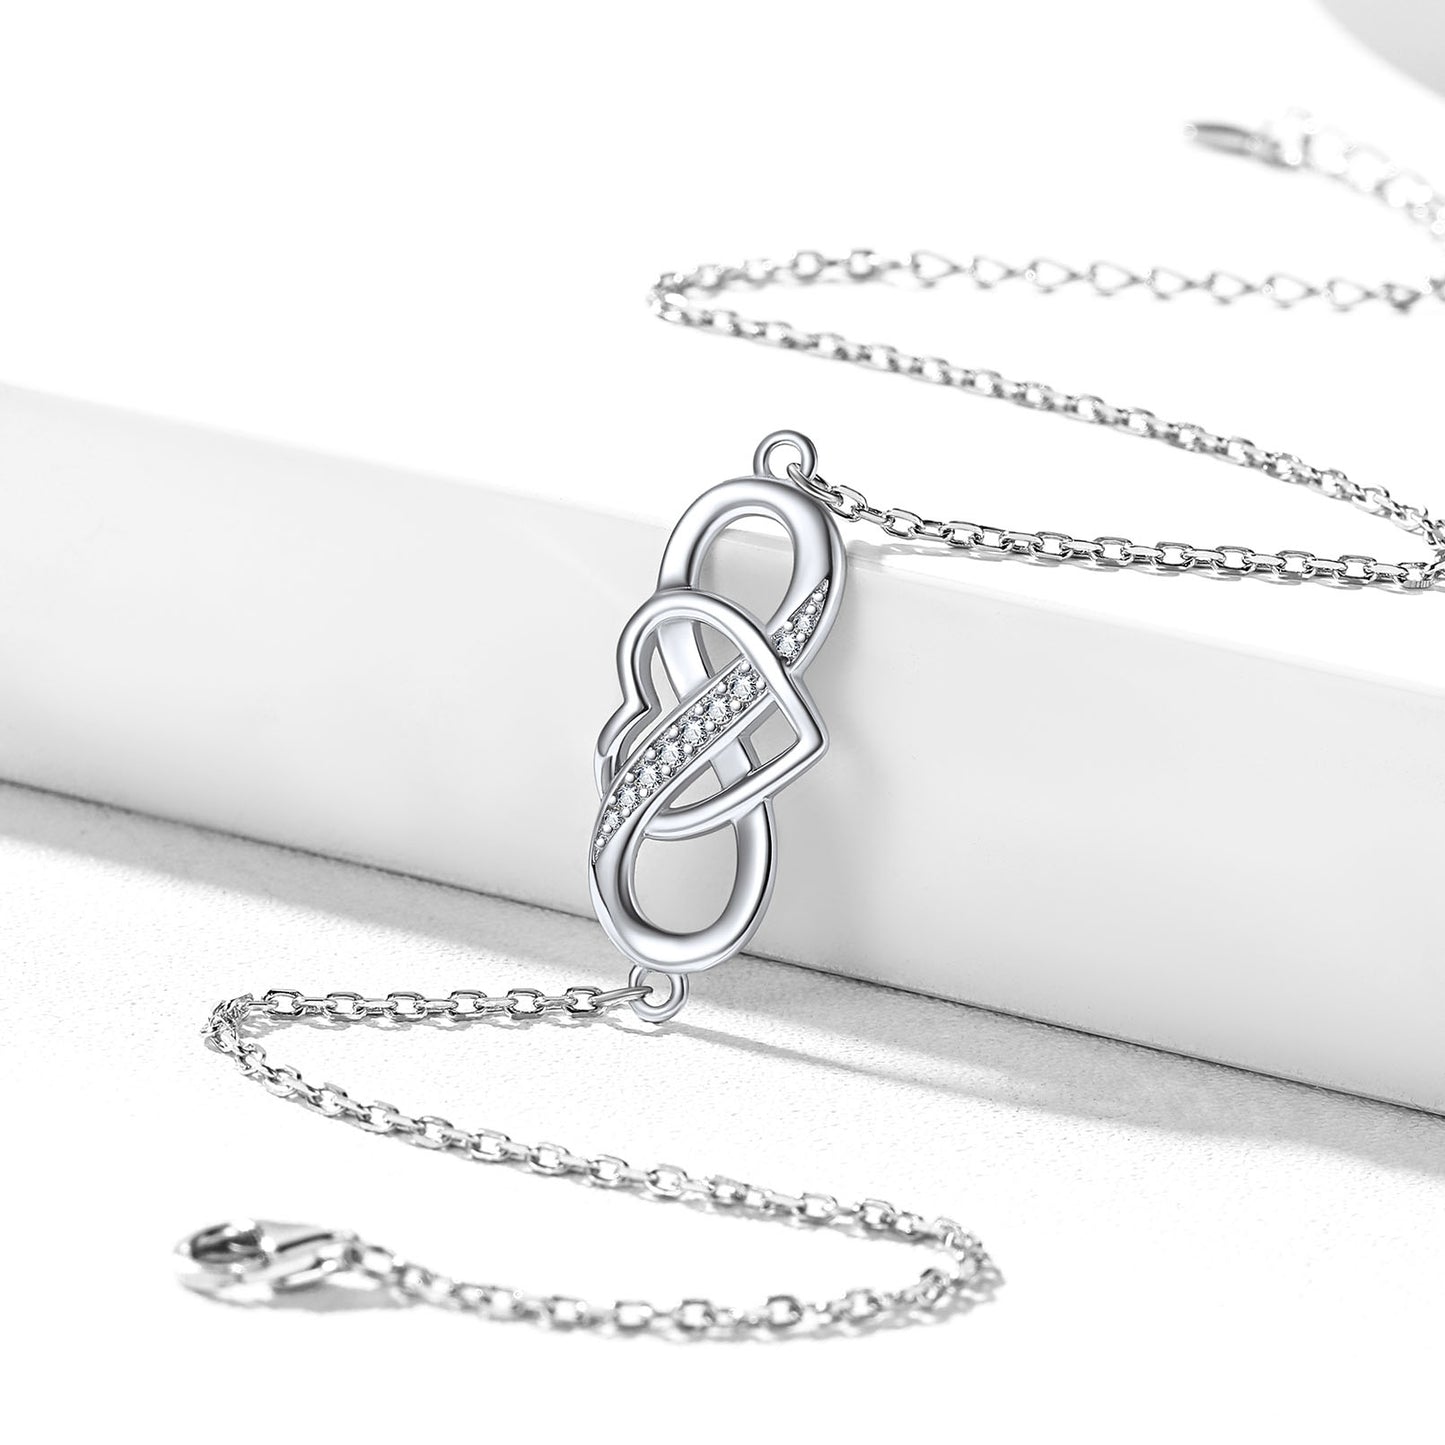 Bracelet de cheville Infinity Heart pour femme et fille